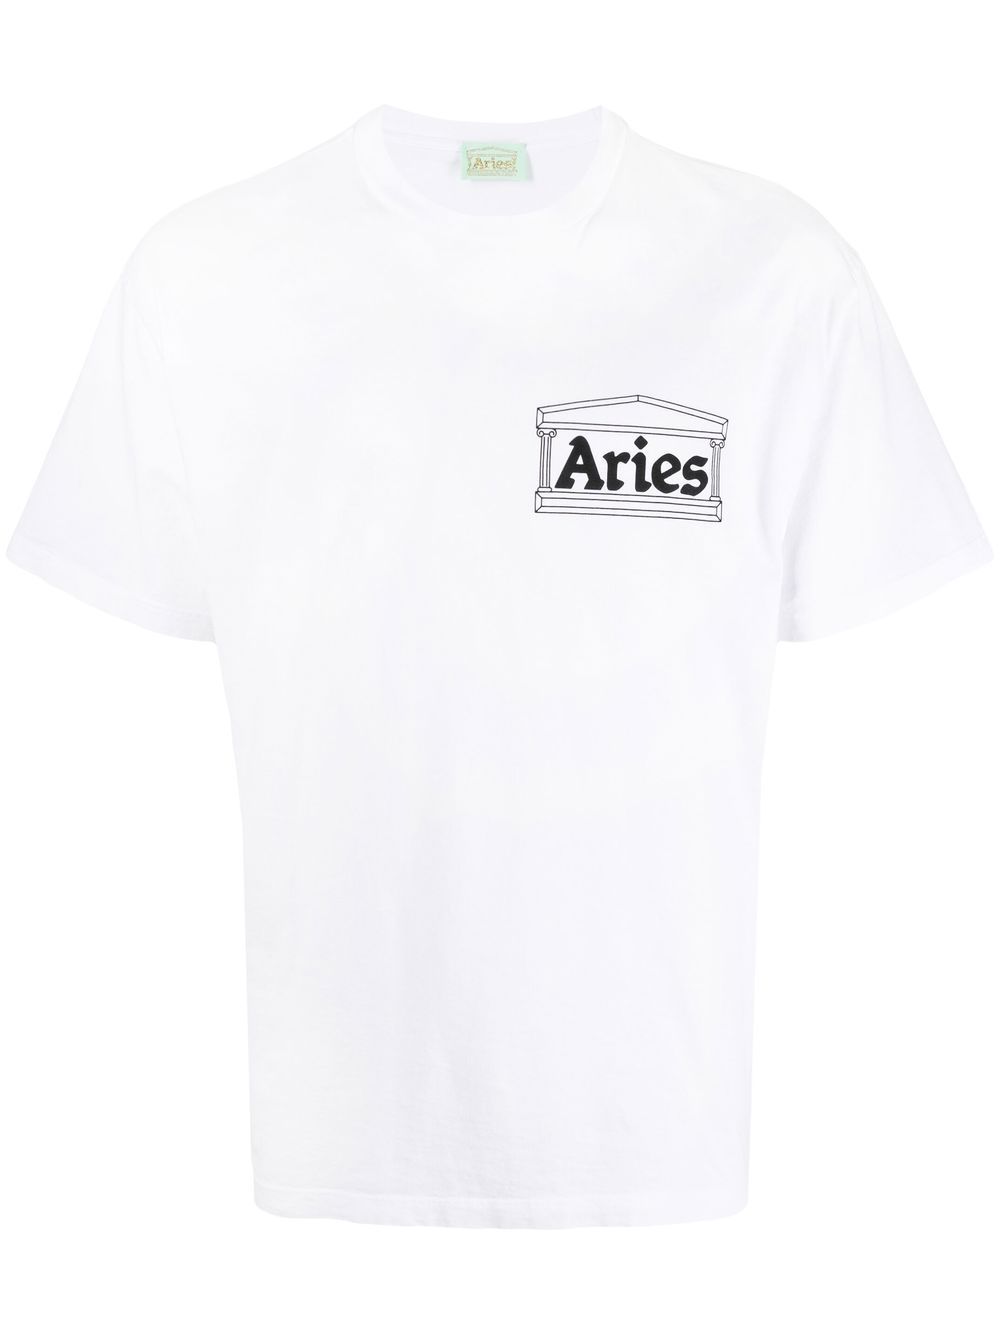 Aries 'I'm With Aries' T-shirt - White von Aries